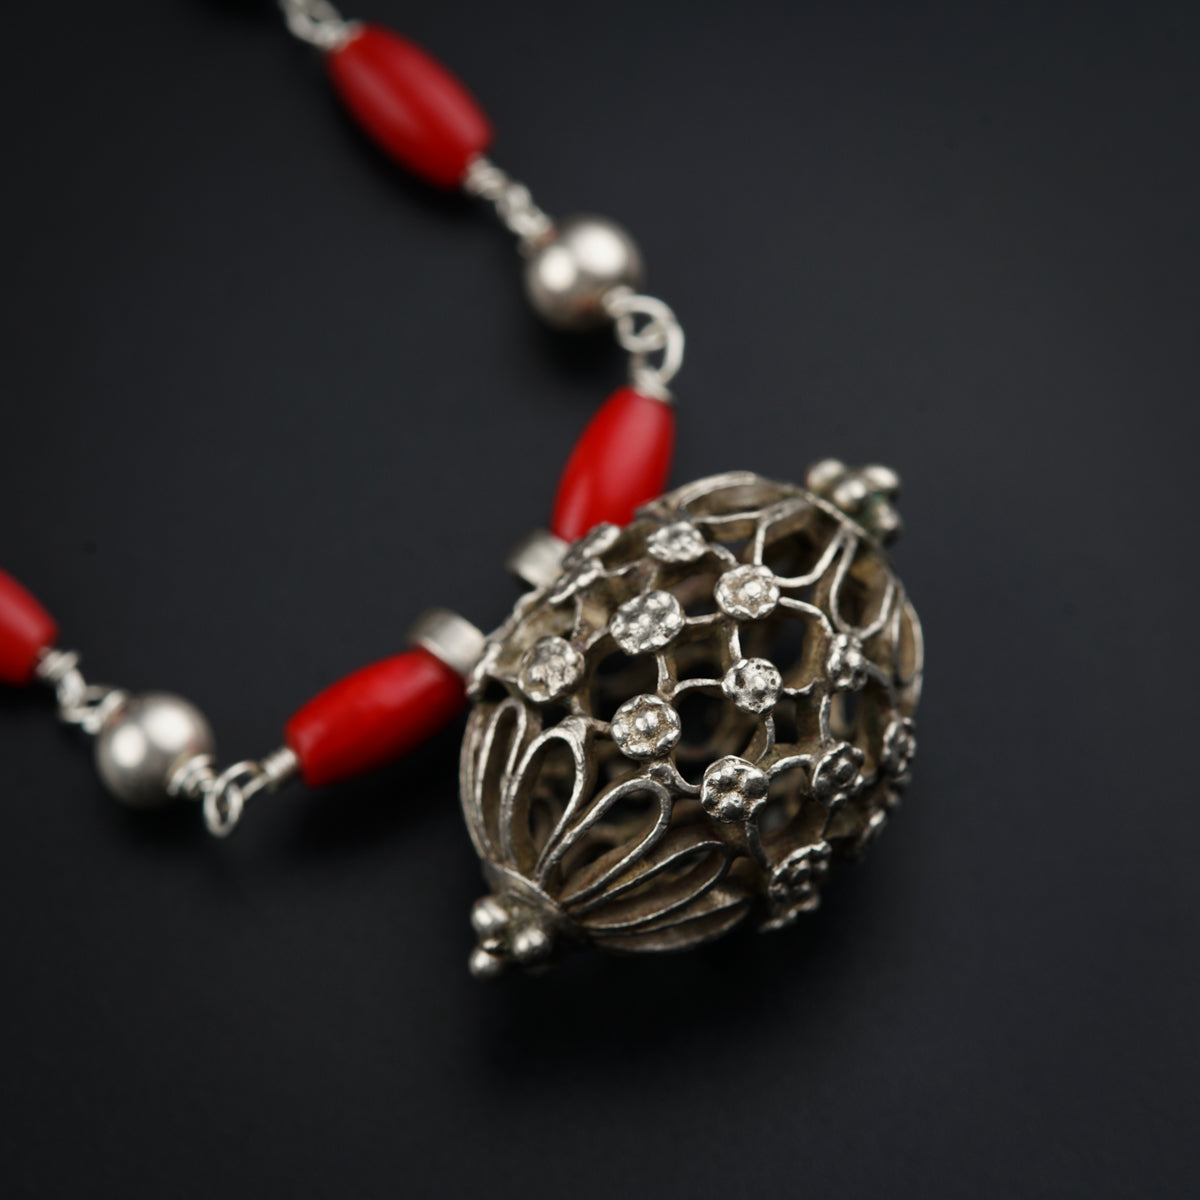 Silver Antique Pendant Necklace